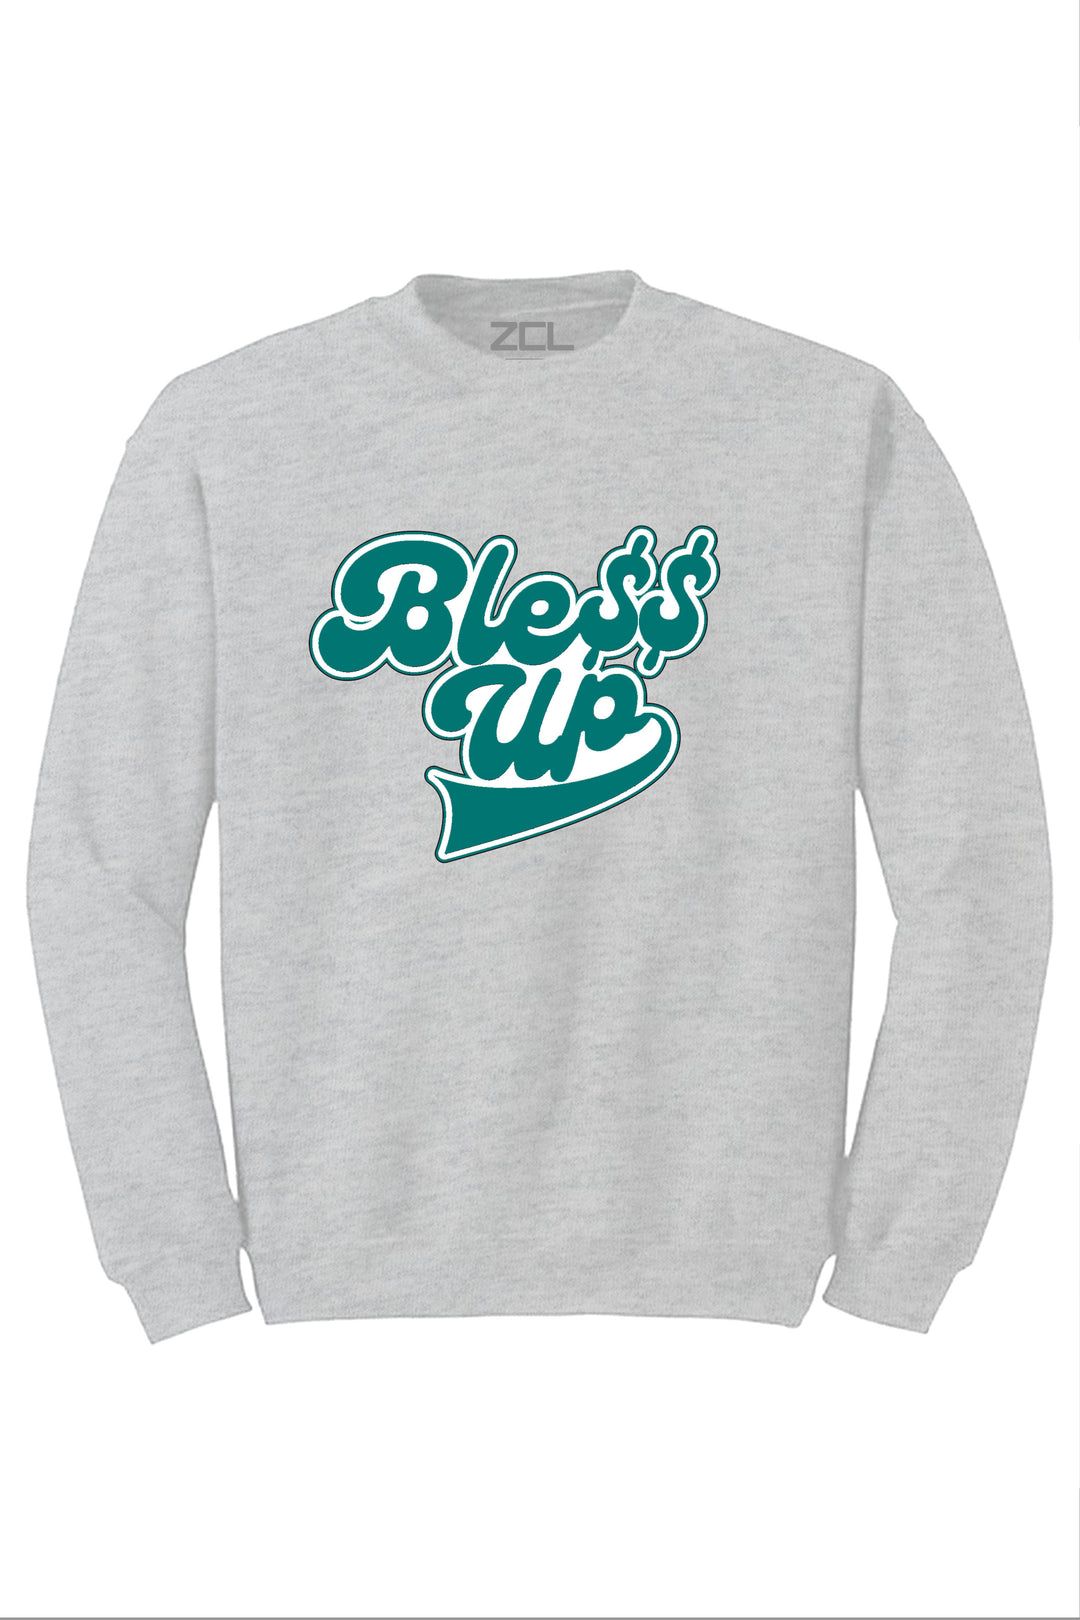 Bless Up Crewneck Sweatshirt (White Logo) - Zamage